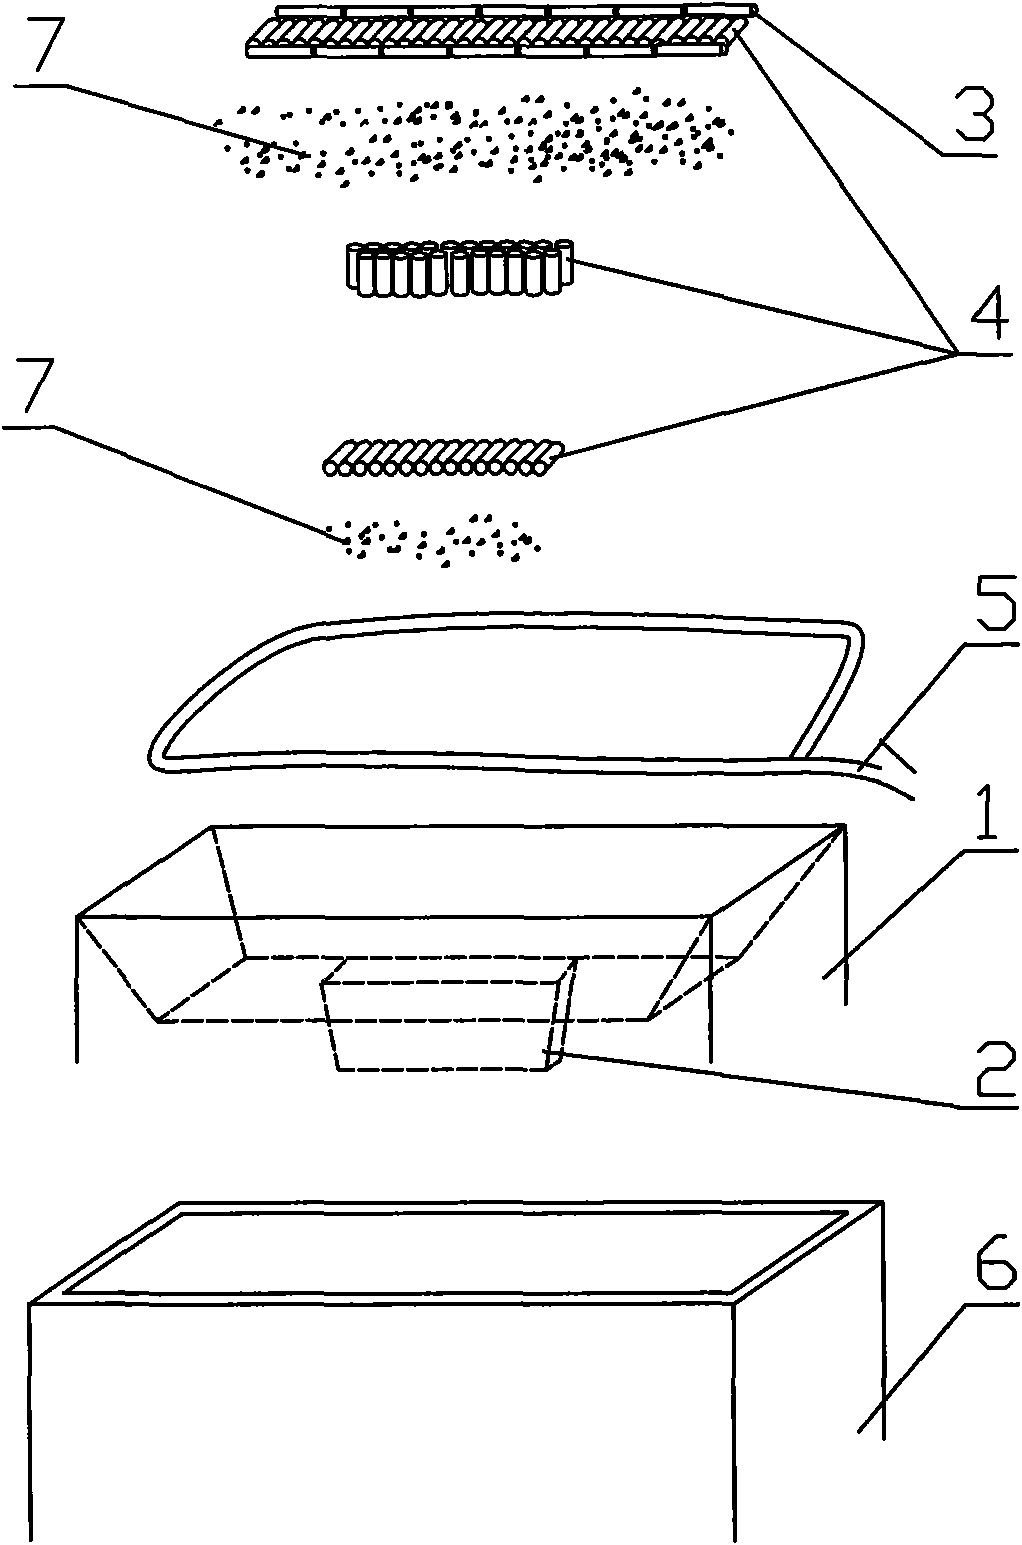 Slab seal dummy ingot method for preventing break-out of steel